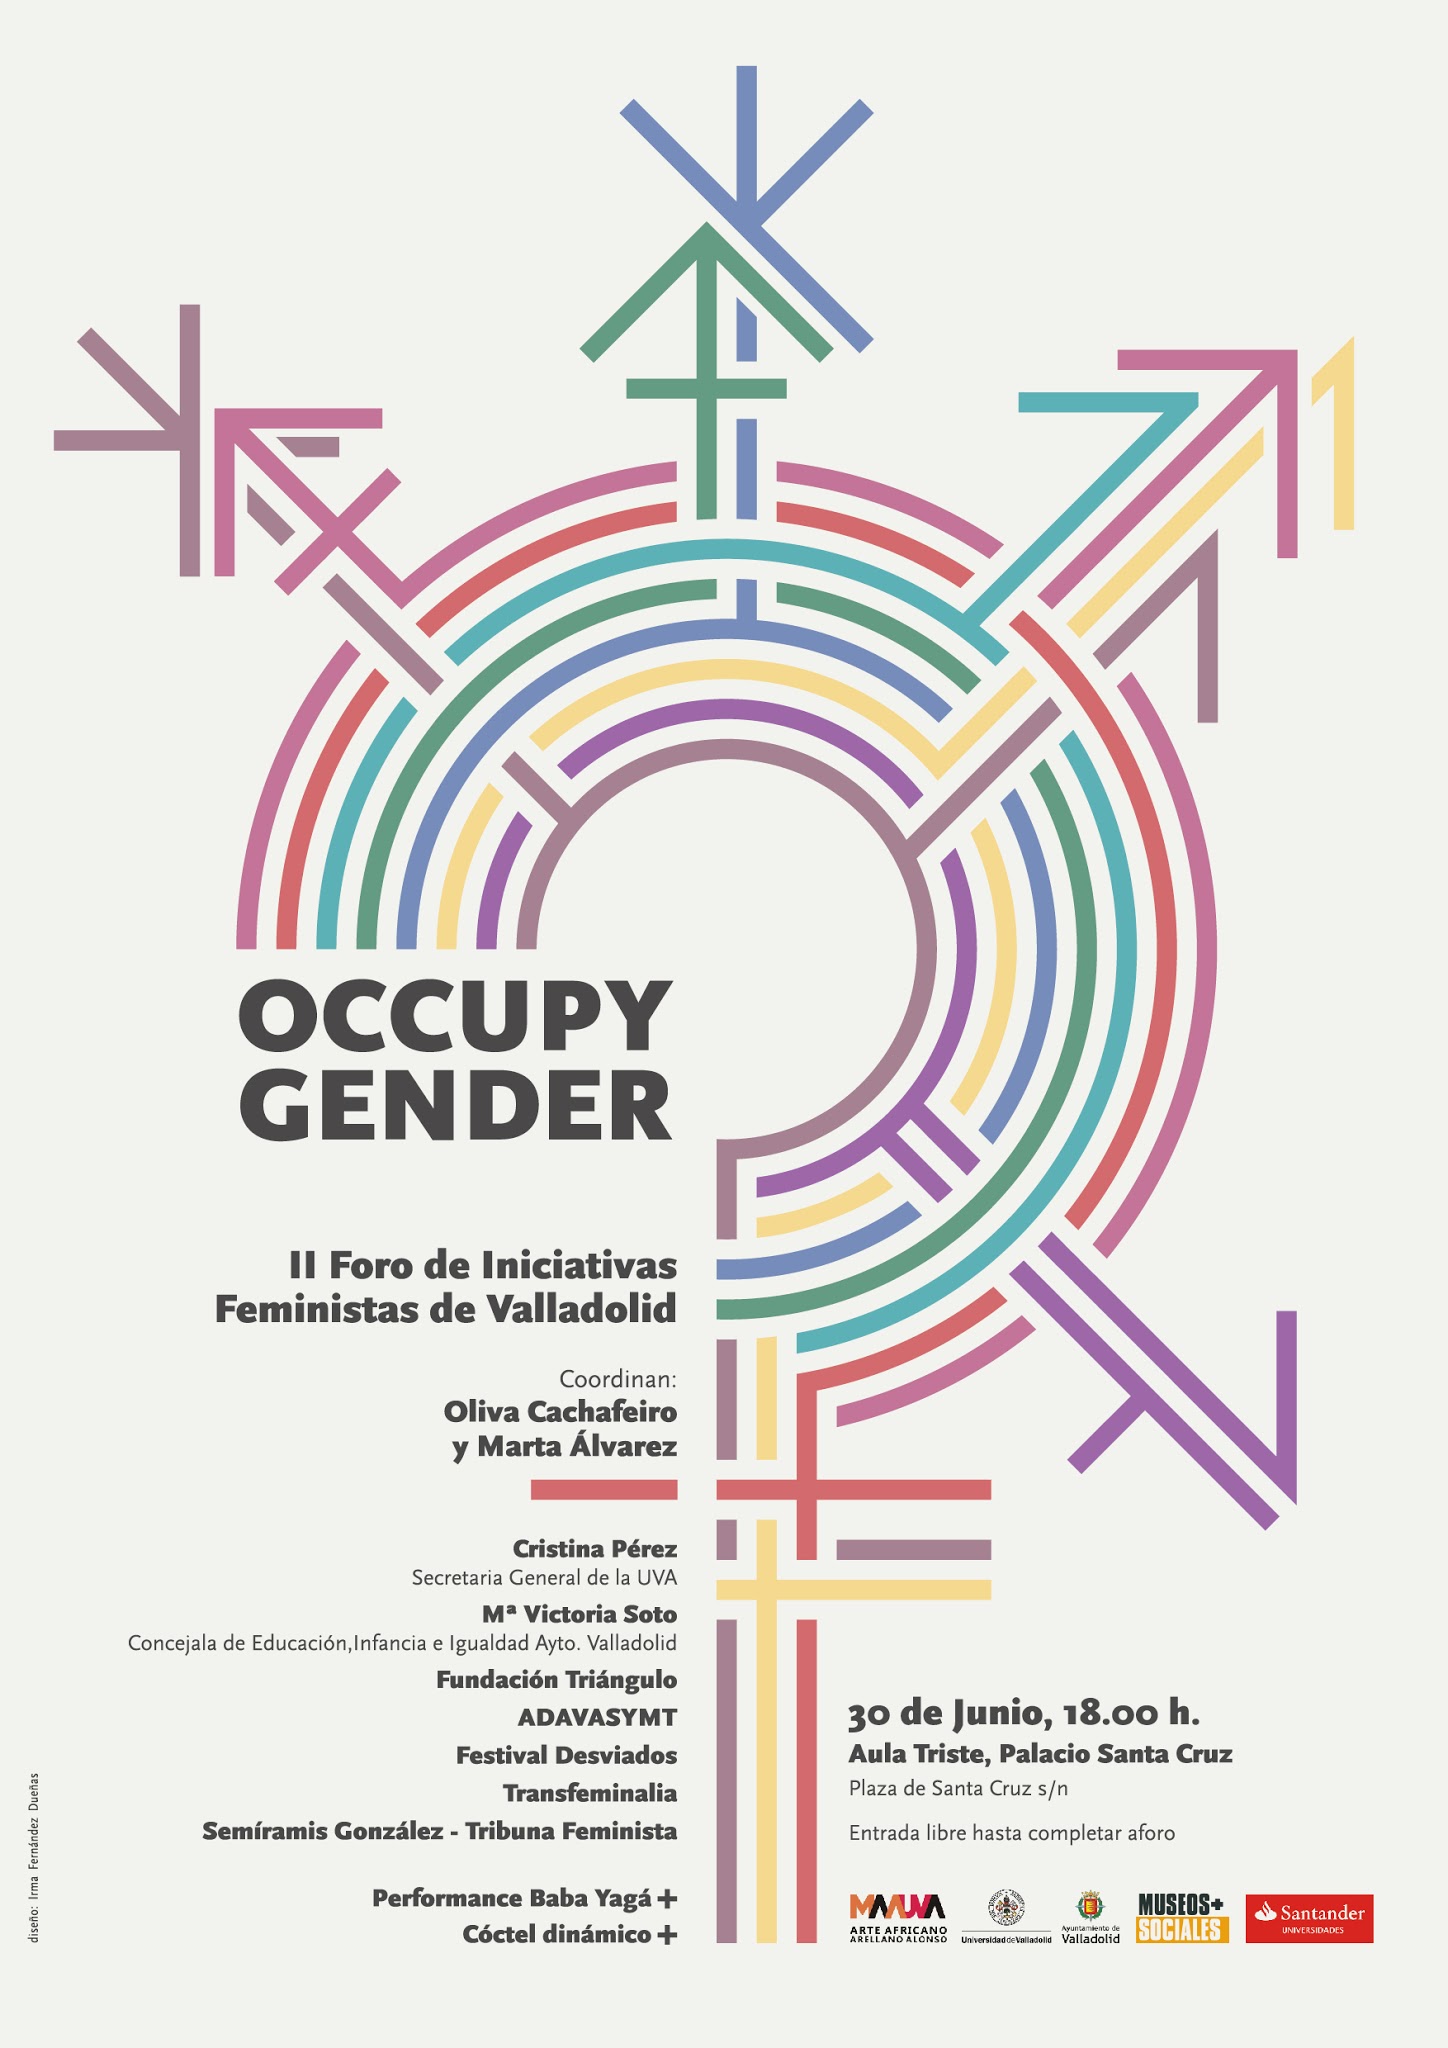 Occupy Gender: II Foro de Iniciativas Feministas de Valladolid